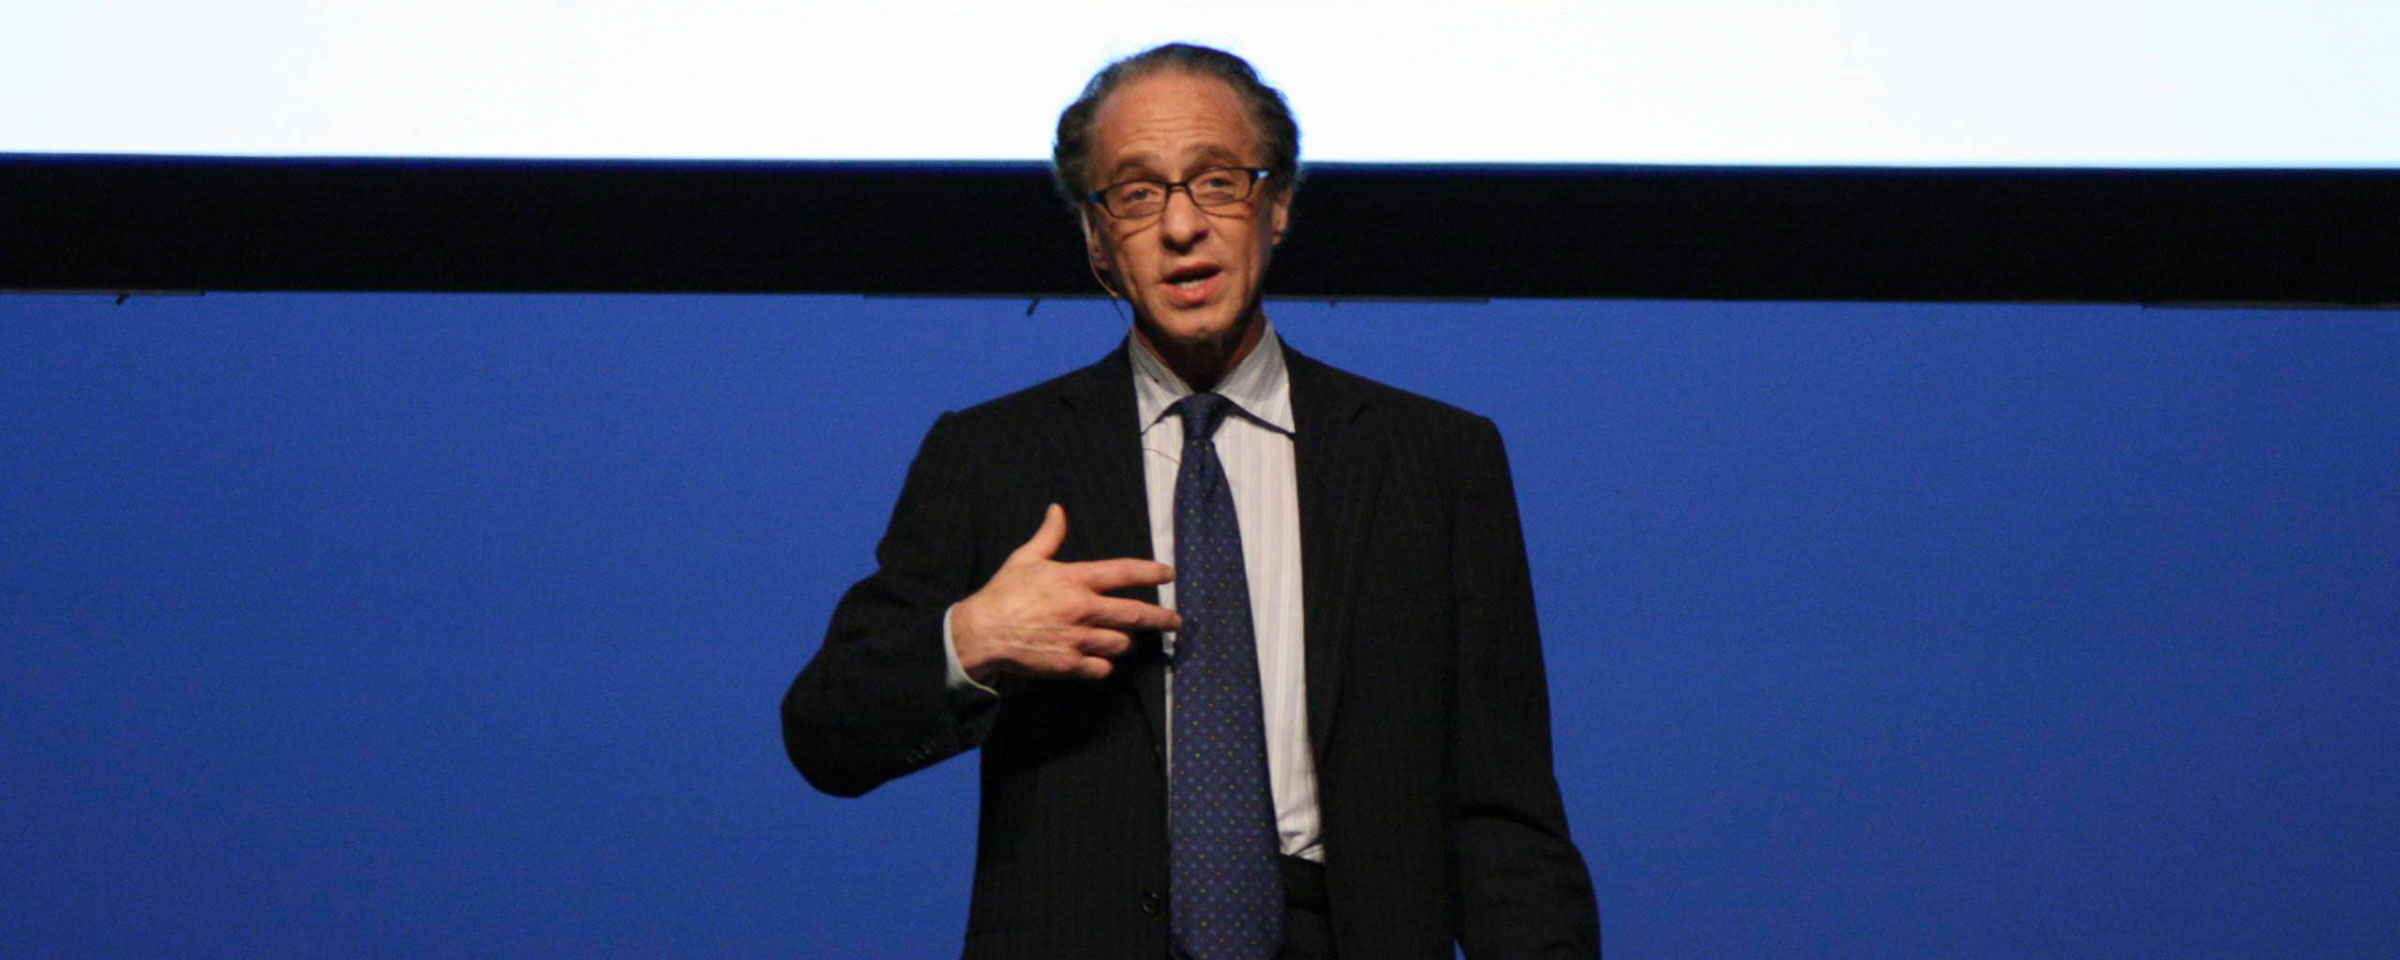 Ray Kurzweil gives a speech